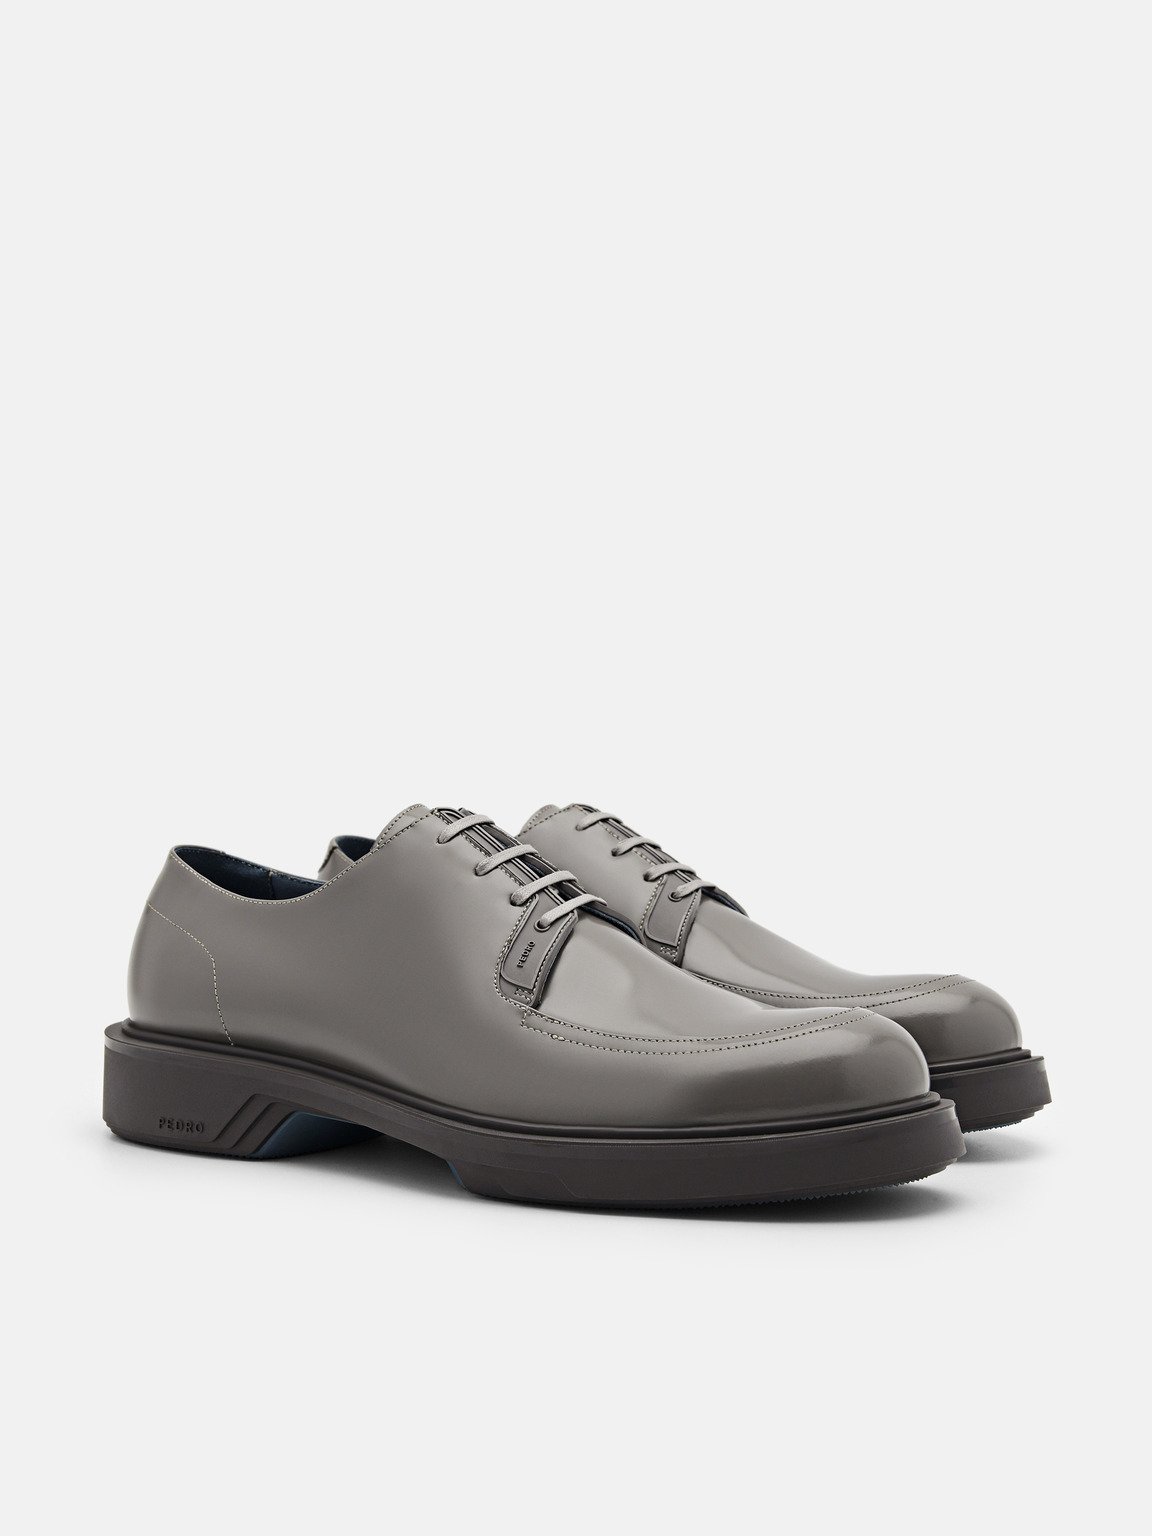 Loop Leather Derby Shoes, Dark Grey